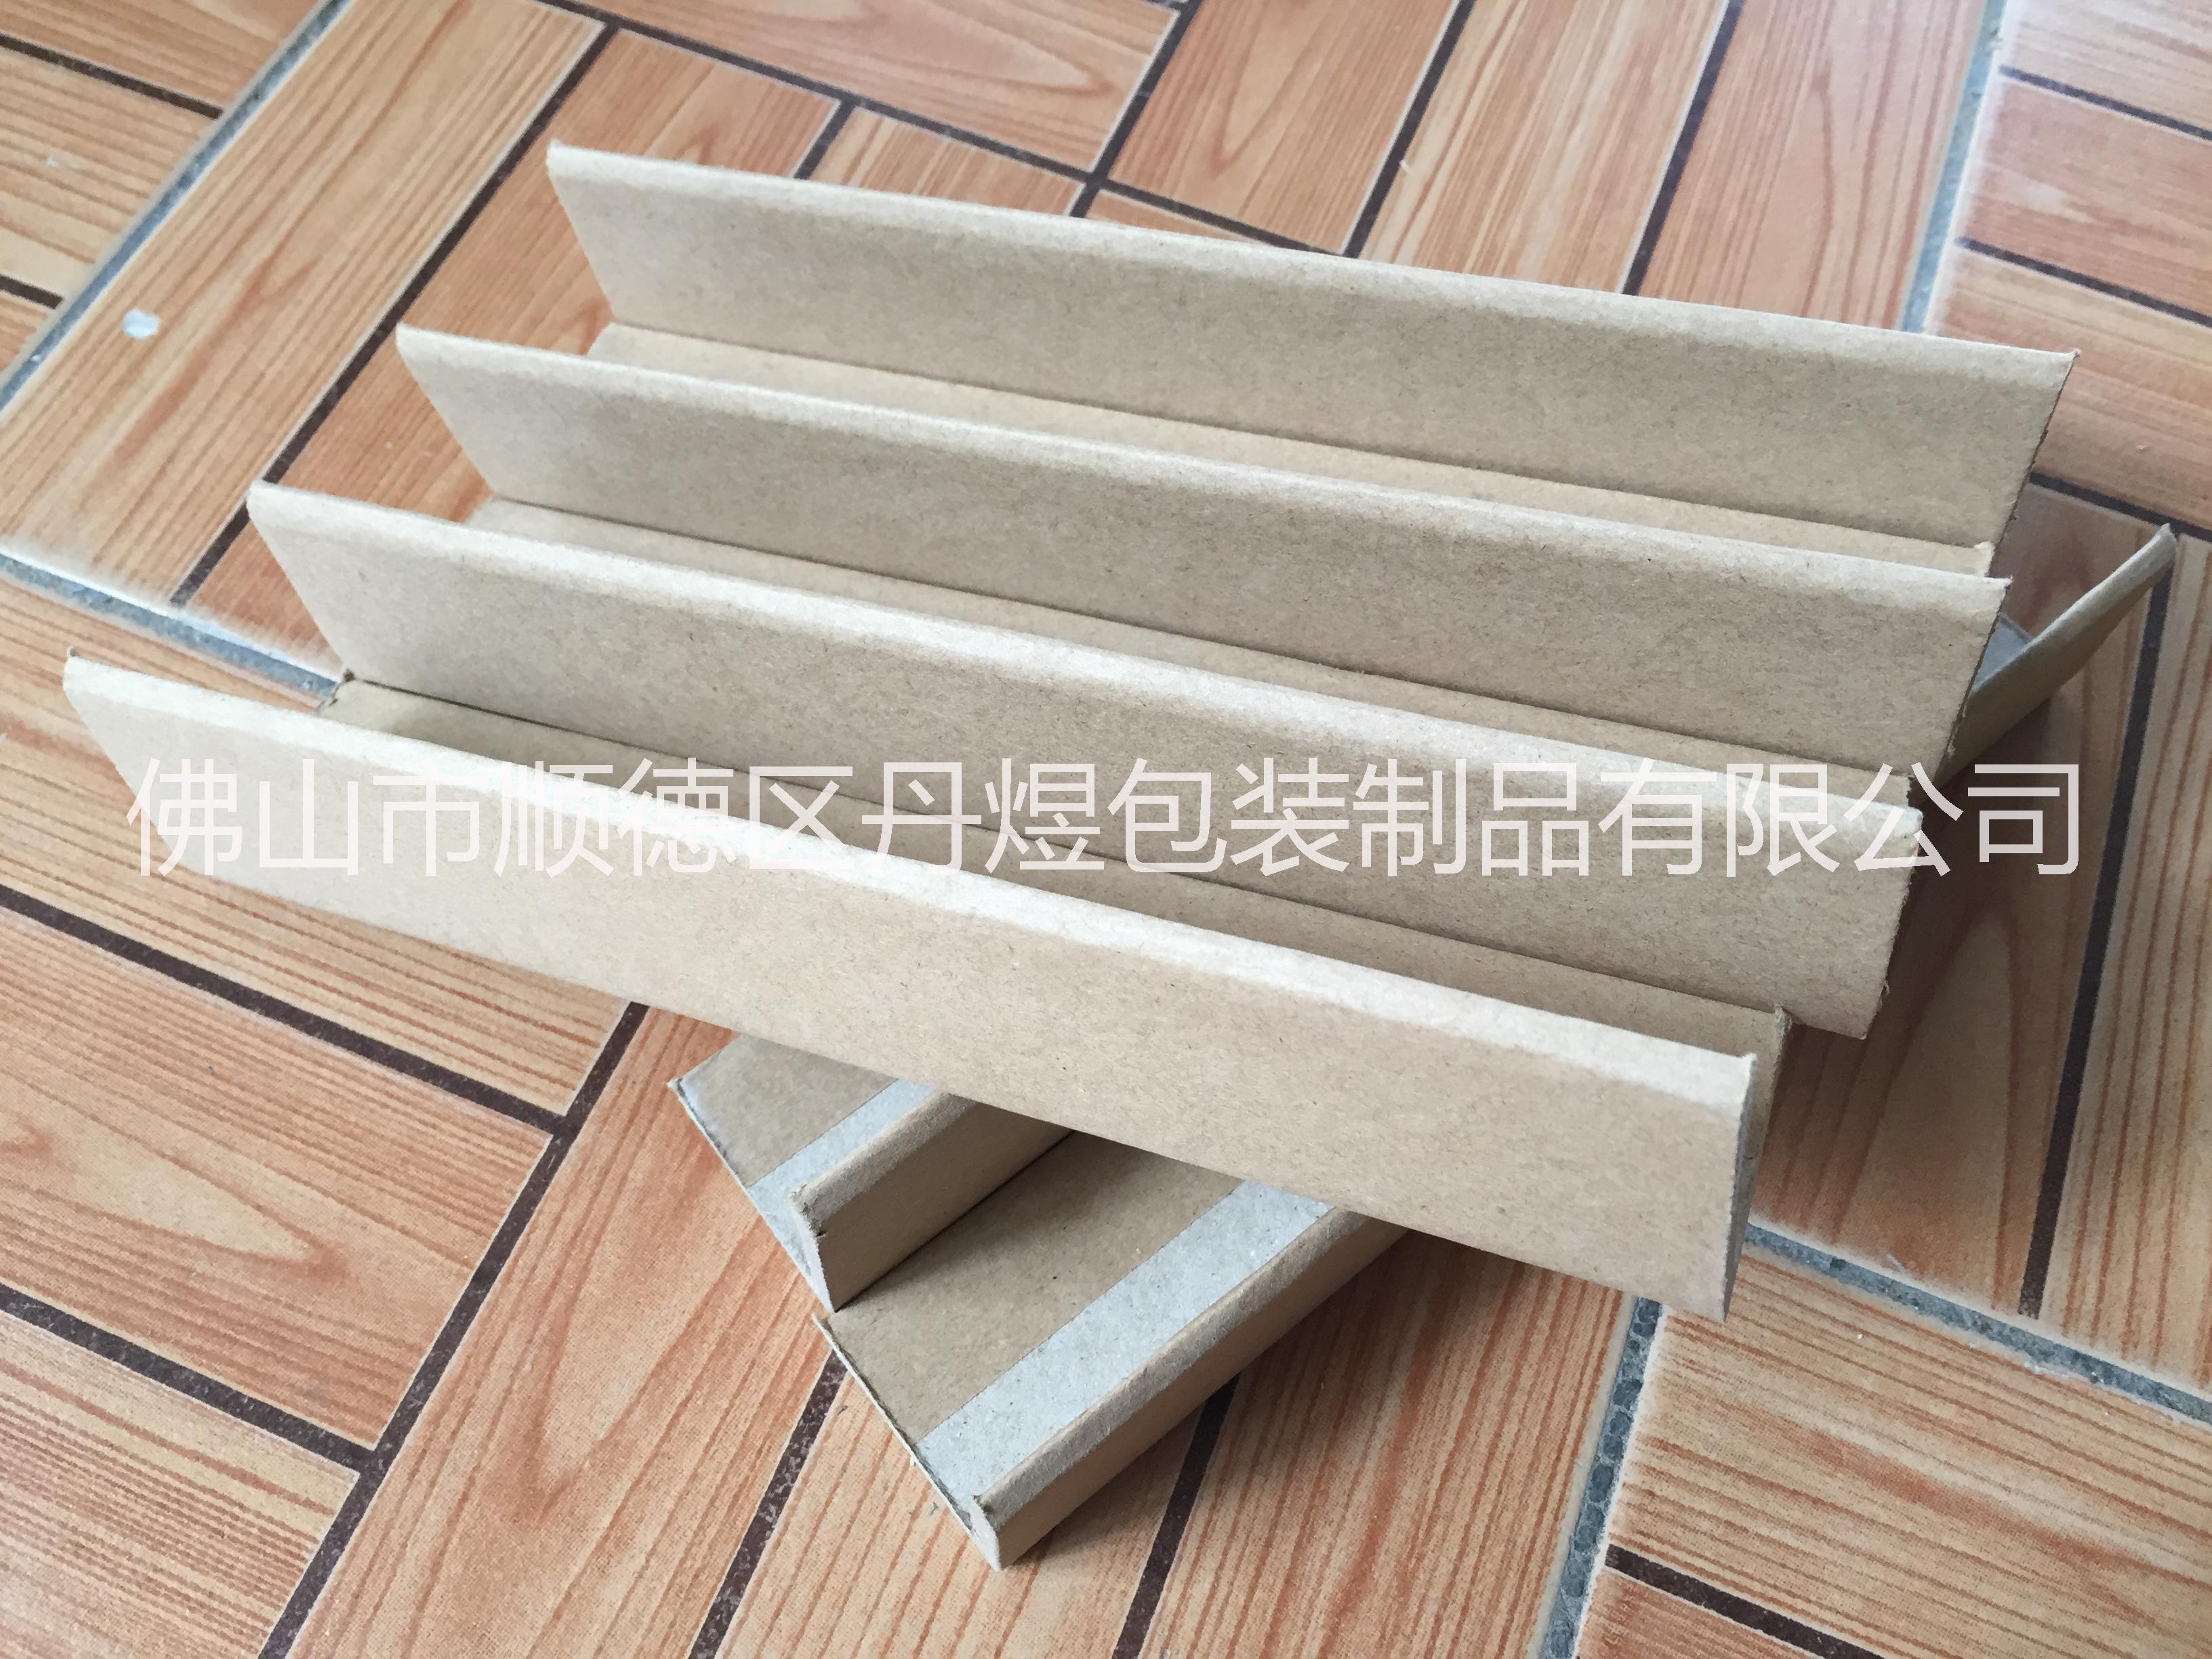 广州纸护角厂家广州纸护角厂家-广州包装纸护角生产商-广州L型纸护角厂家定做